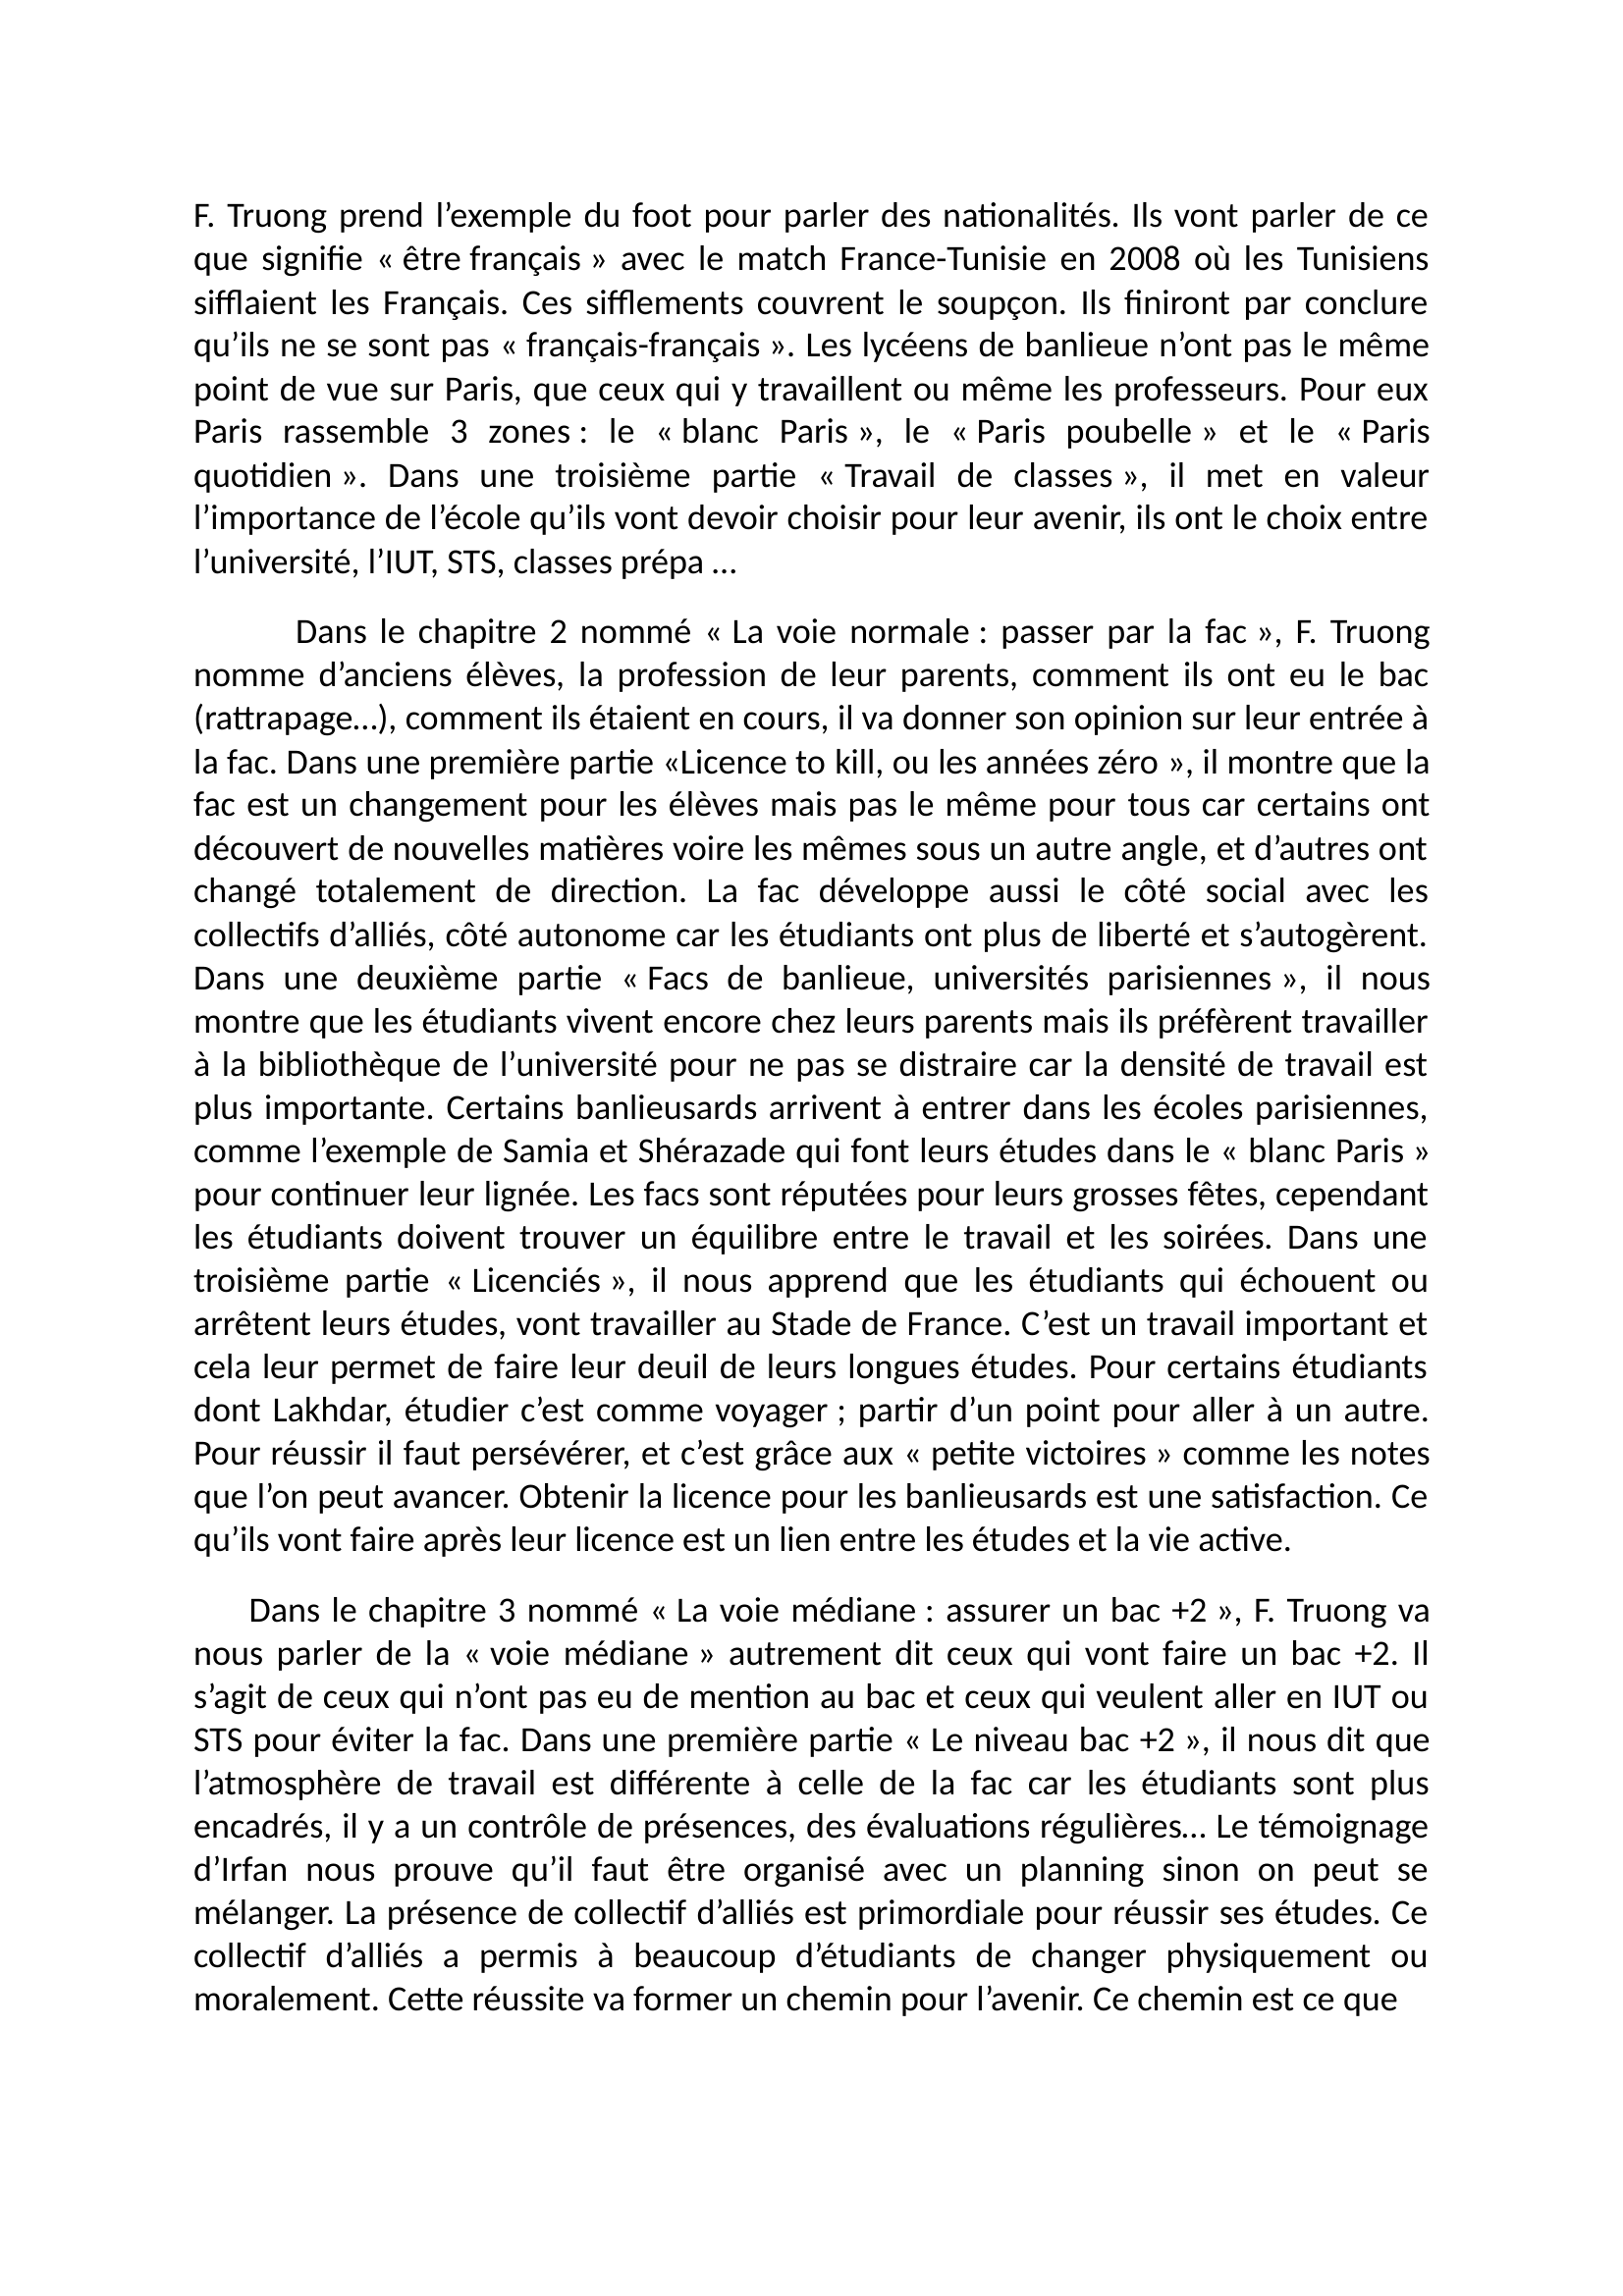 Prévisualisation du document SES 

 
Fiche de lecture 

 
 

 
        Le livre Jeunesses françaises bac +5 made in banlieue de Fabien Truong est publié en septembre 2015 dans les éditions La Découverte de la collection SH/L’envers des faits.